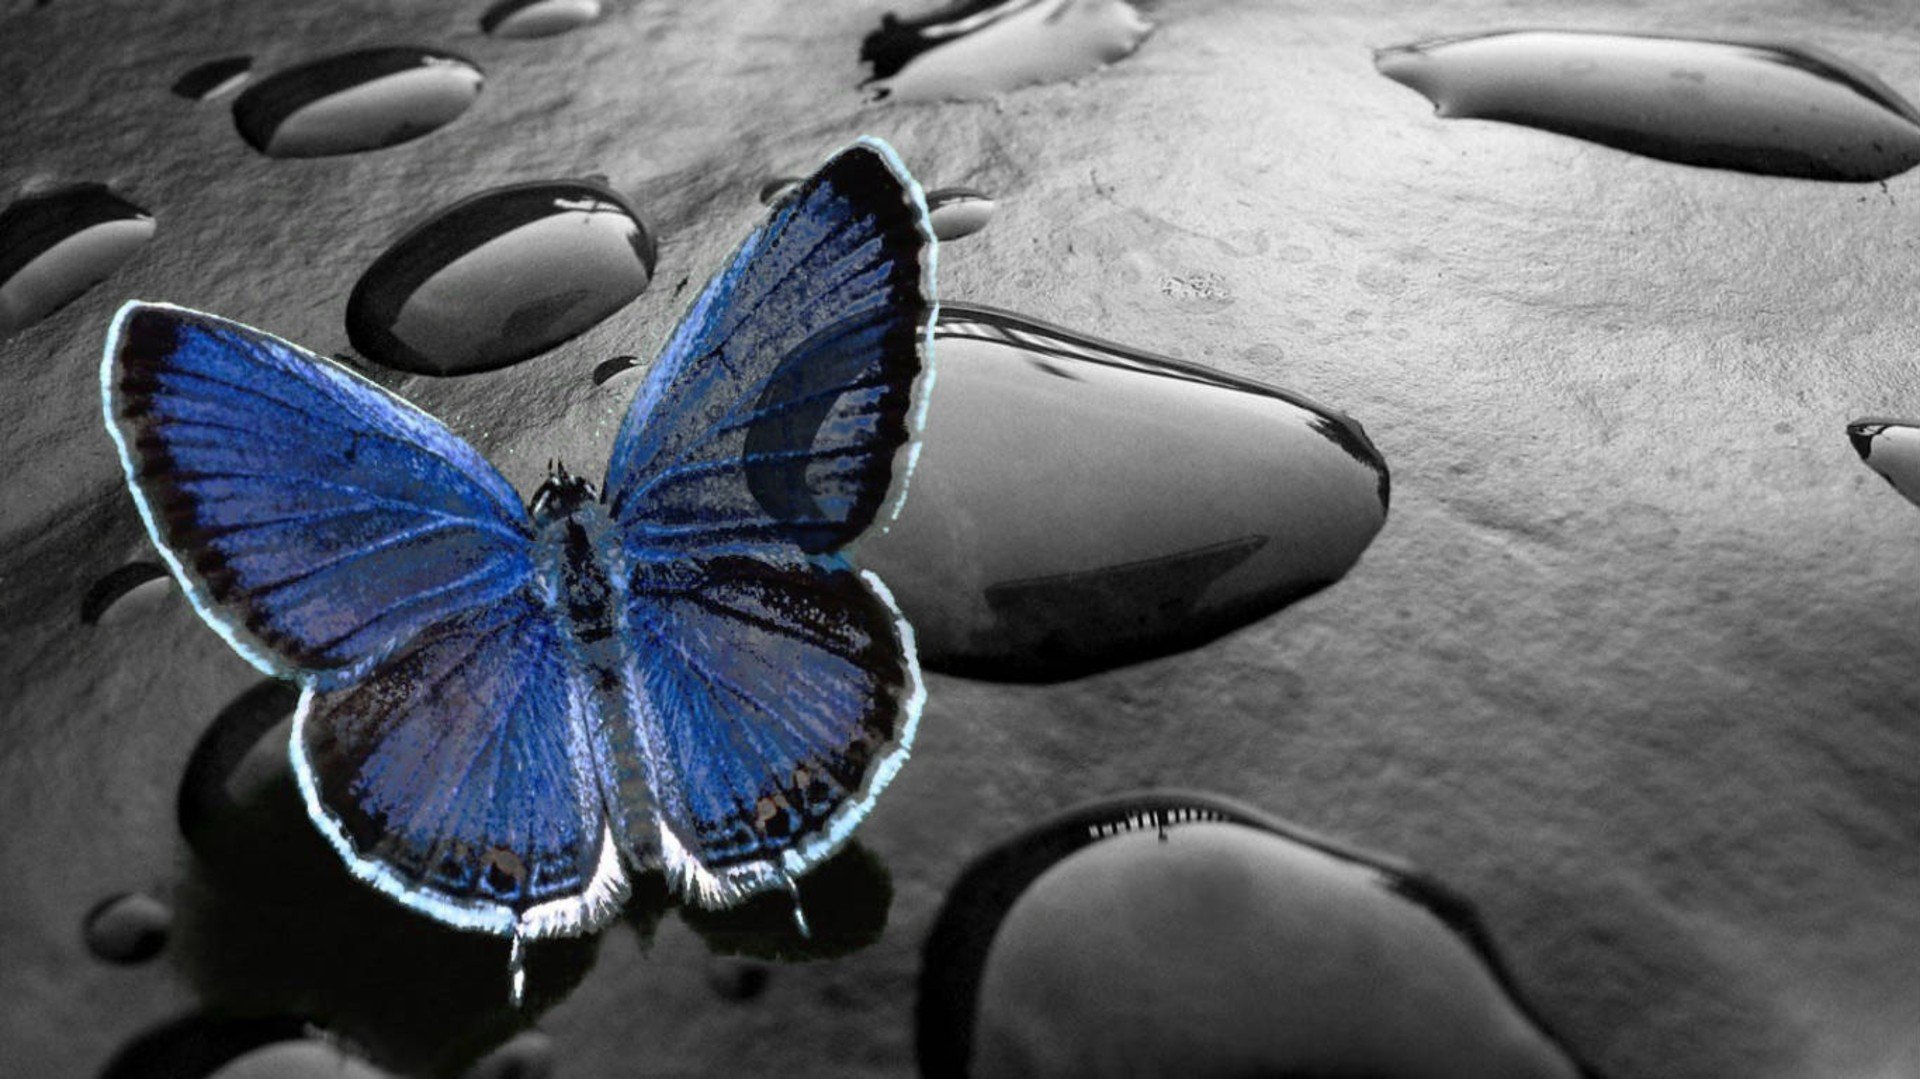 Красивые обои телефон на весь экран необычные. Картинки на рабочий стол бабочки. Заставка на телефон бабочки. Синяя бабочка. Необычные обои.